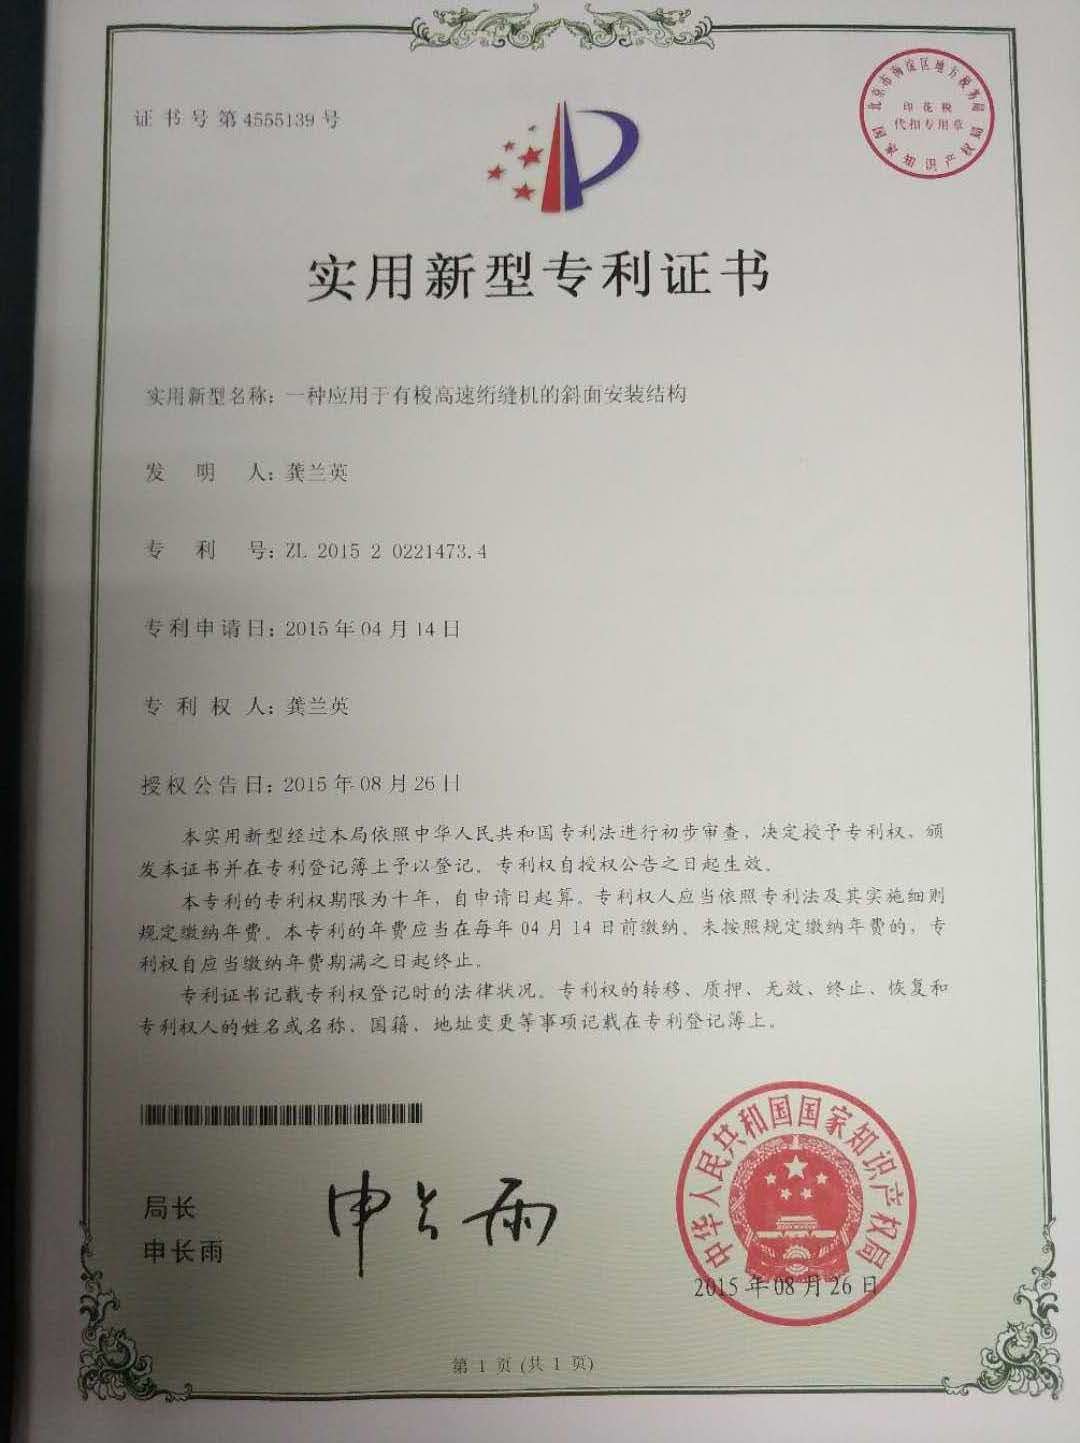 China Dongguan Yuxing Machinery Equipment Technology Co., Ltd. Certificaciones